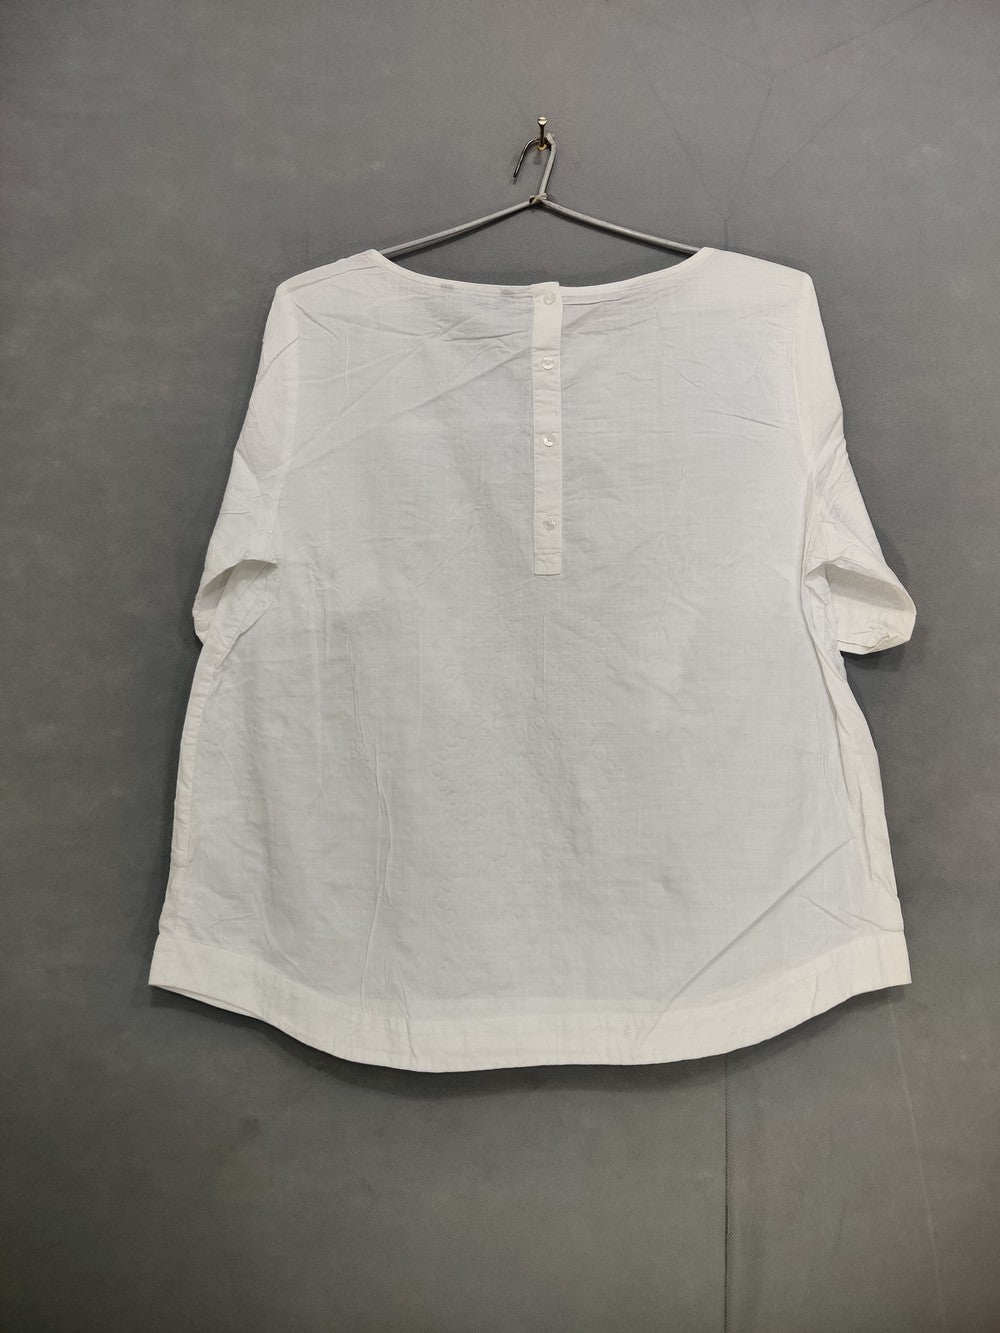 Tommy Hilfiger Branded Original Cotton For Women Tops – Preloved Labels